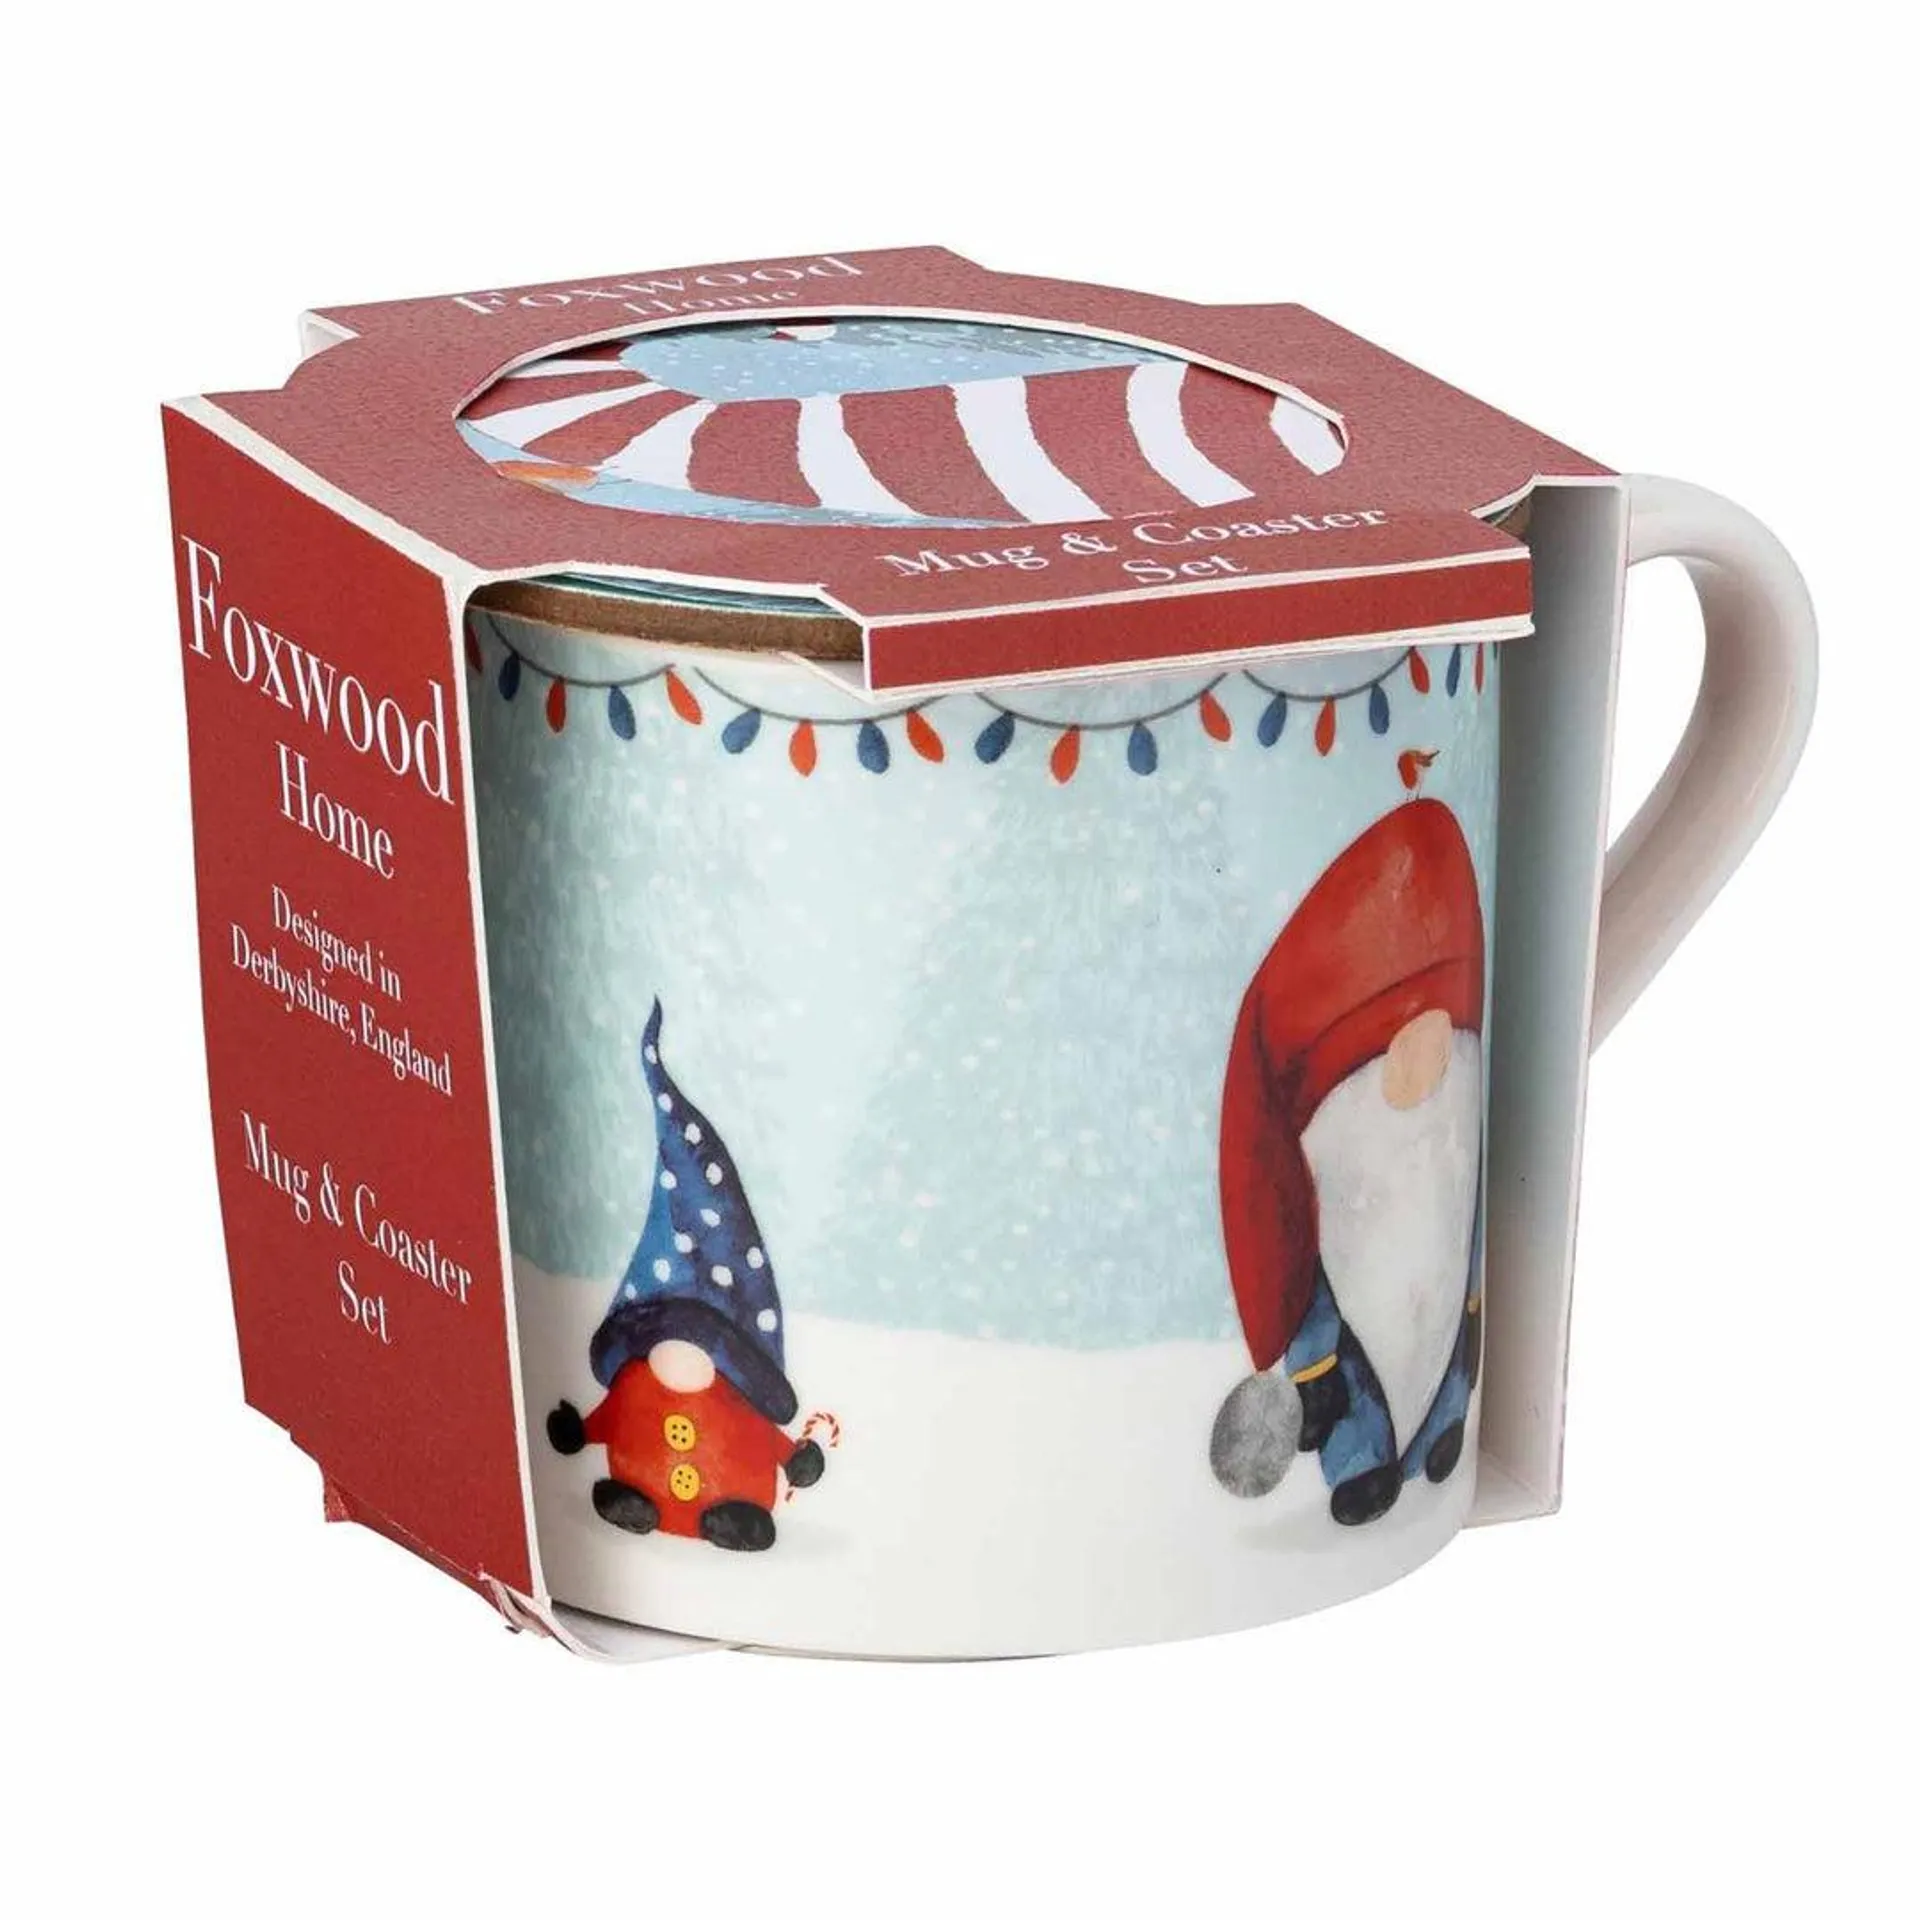 The English Tableware Company Christmas Gonk Mug & Coaster Set